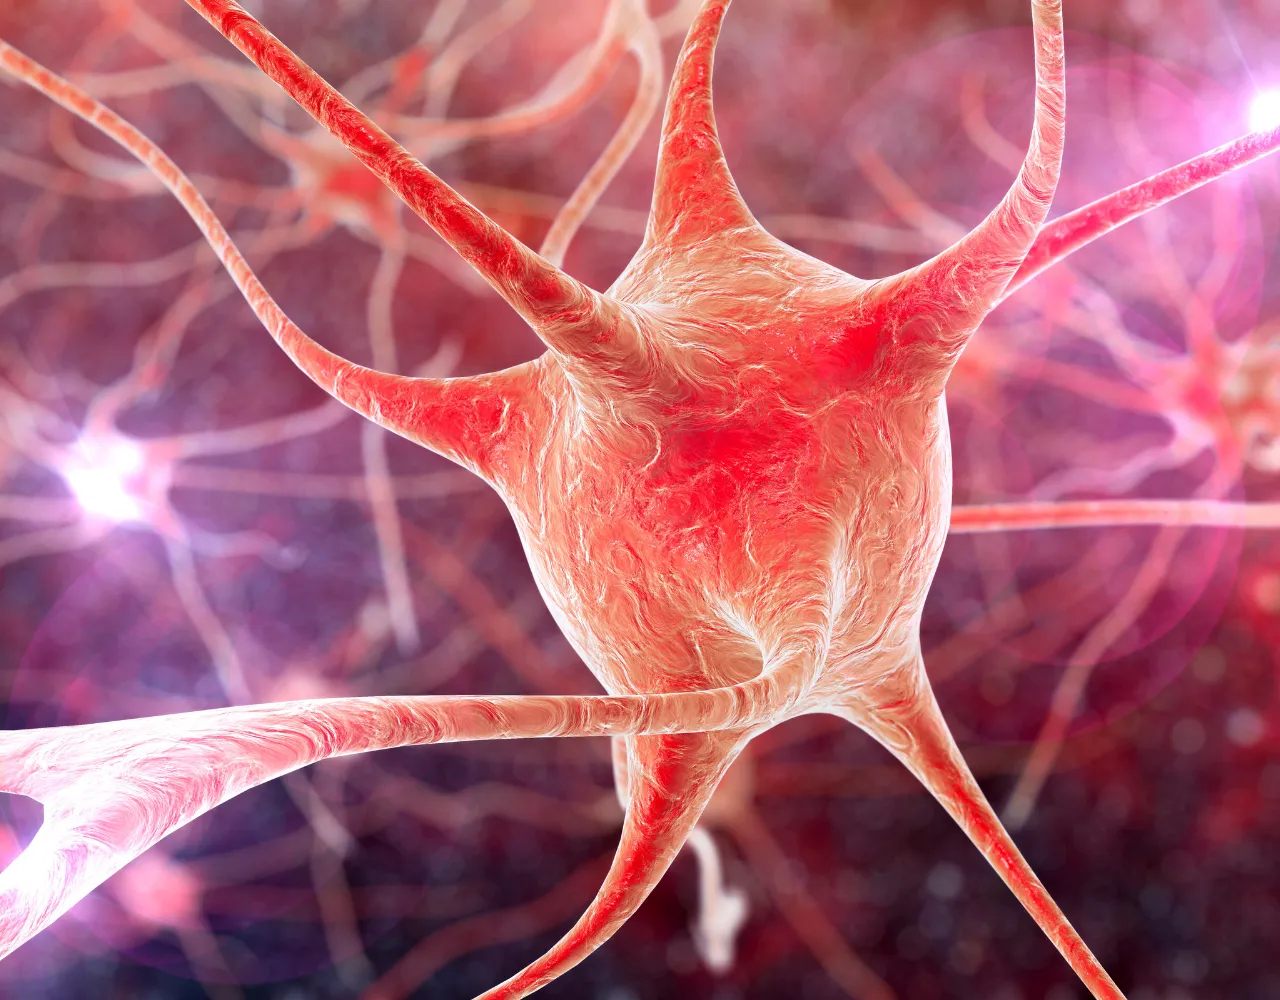 Ilustração digital de um neurônio com dendritos em uma rede neural.